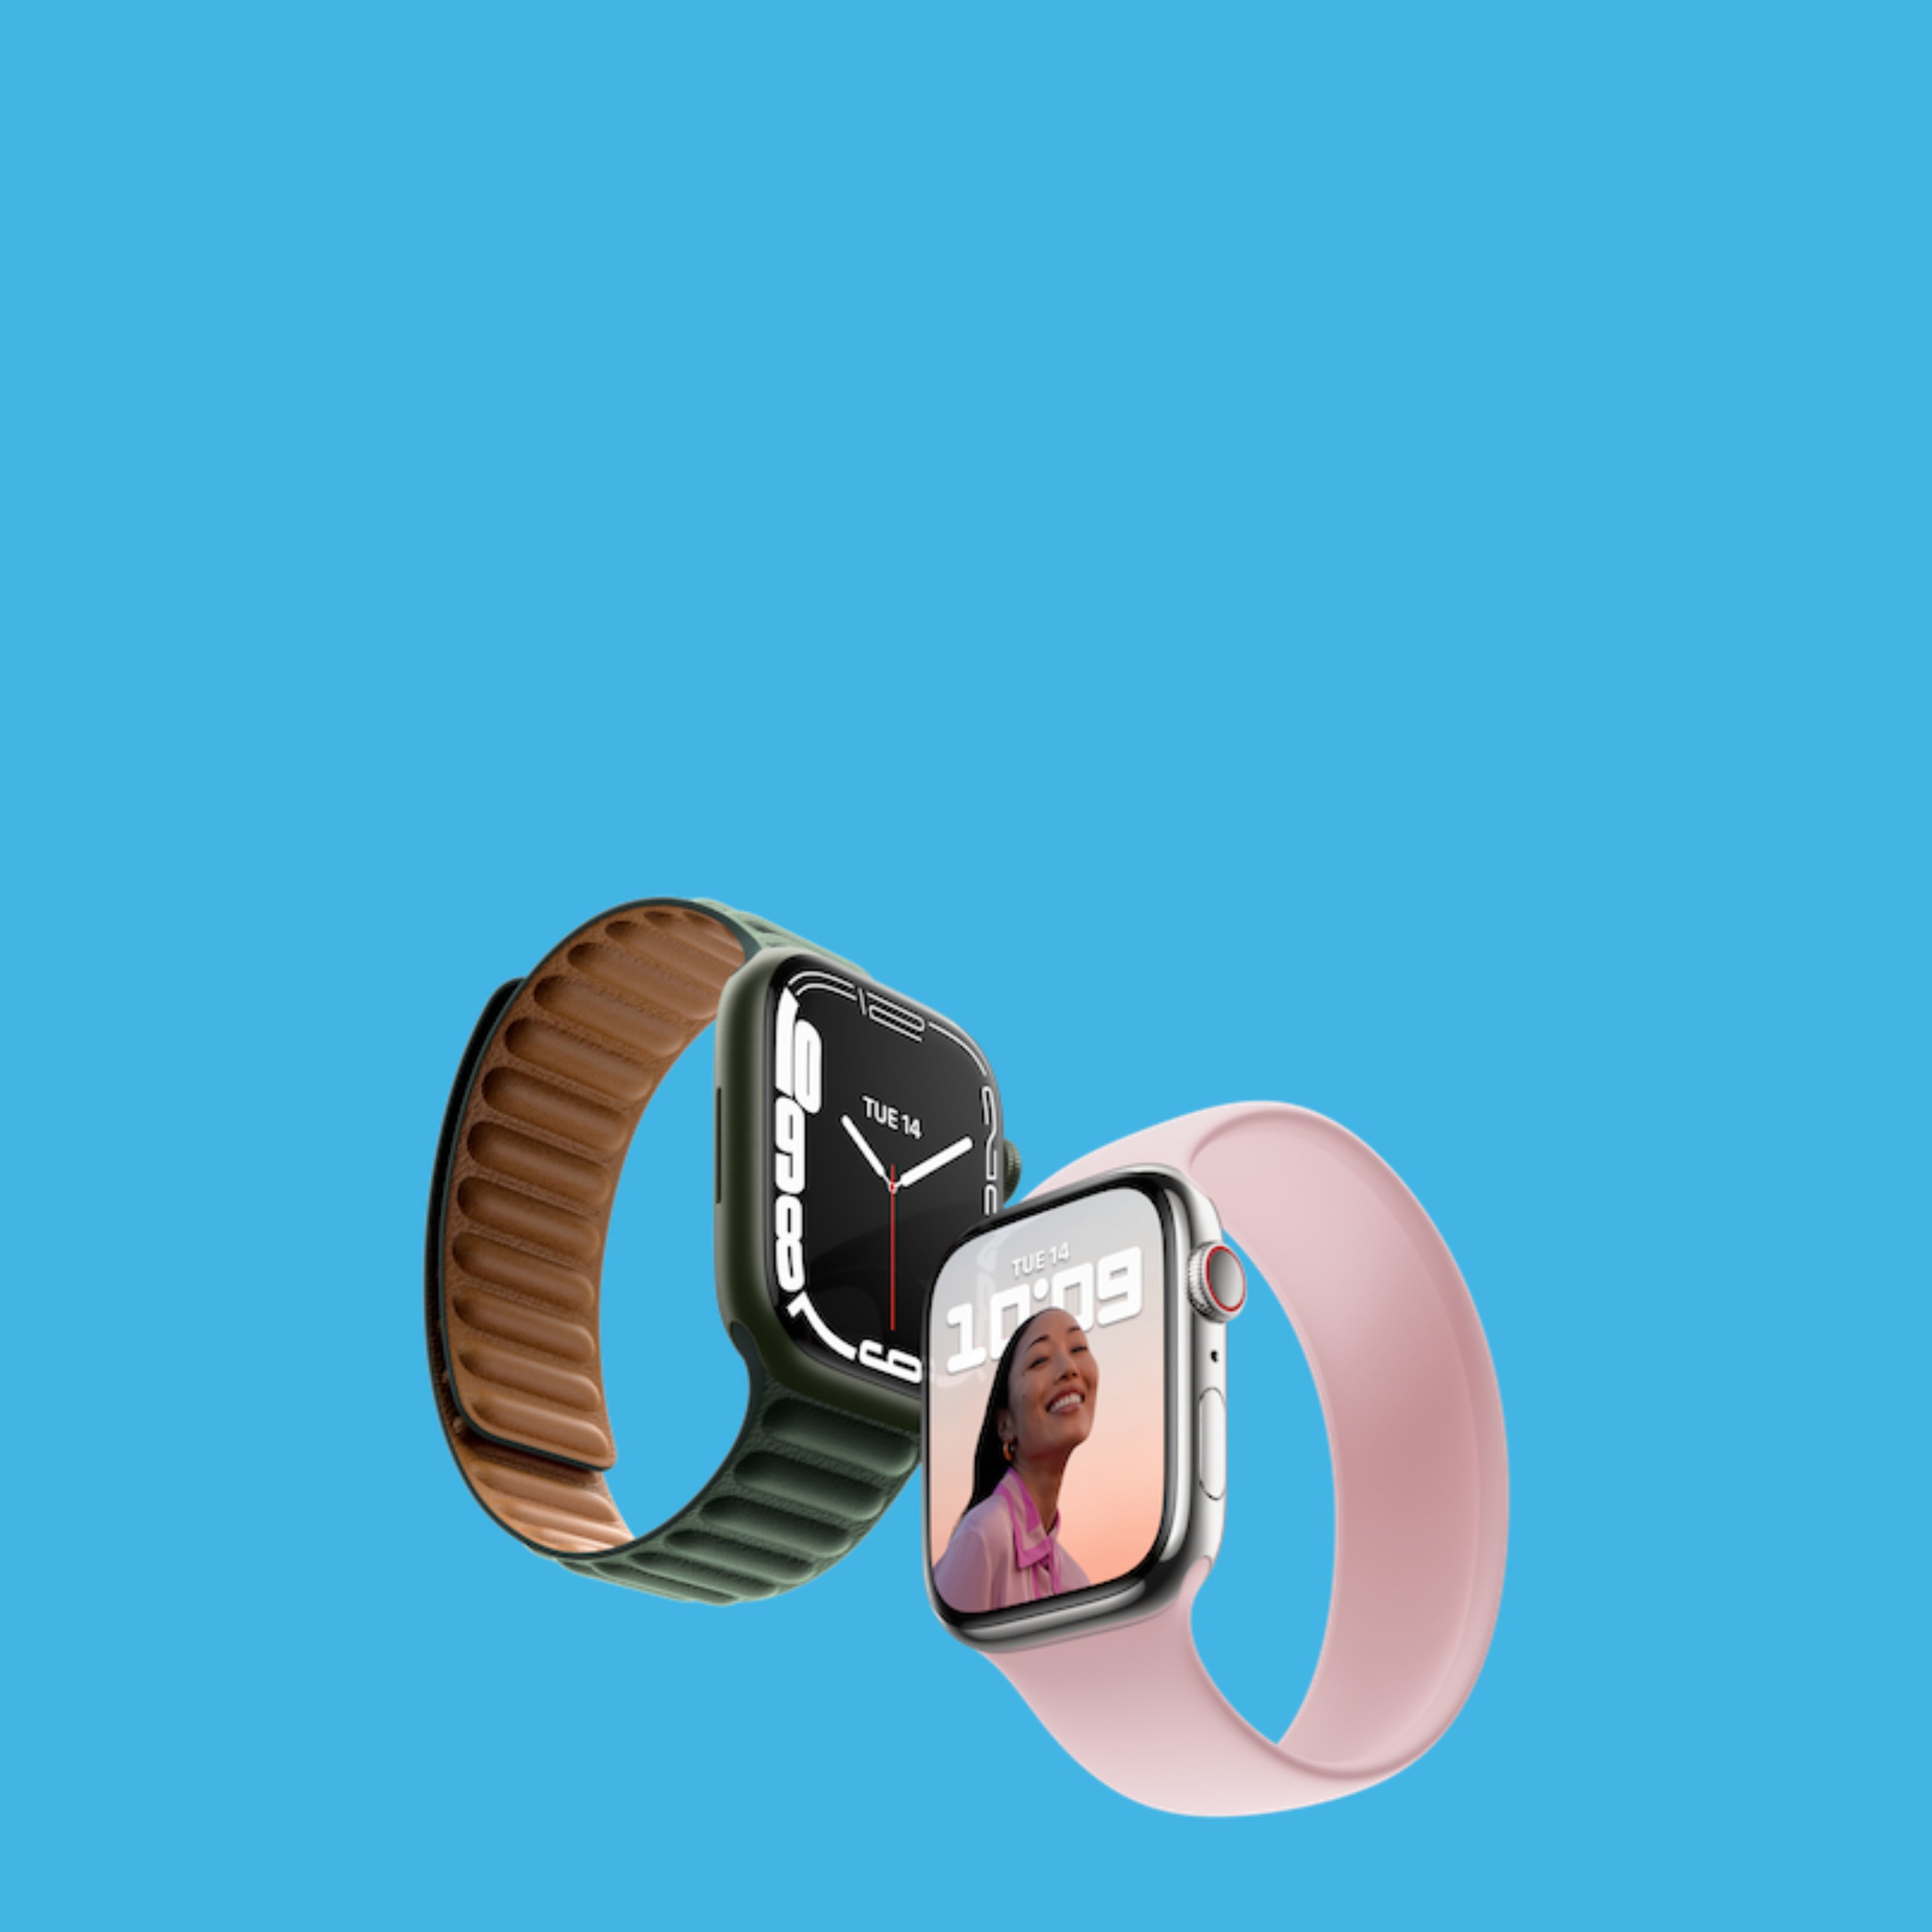 Nuevo Apple Watch, con pantalla Retina más grande y carga rápida